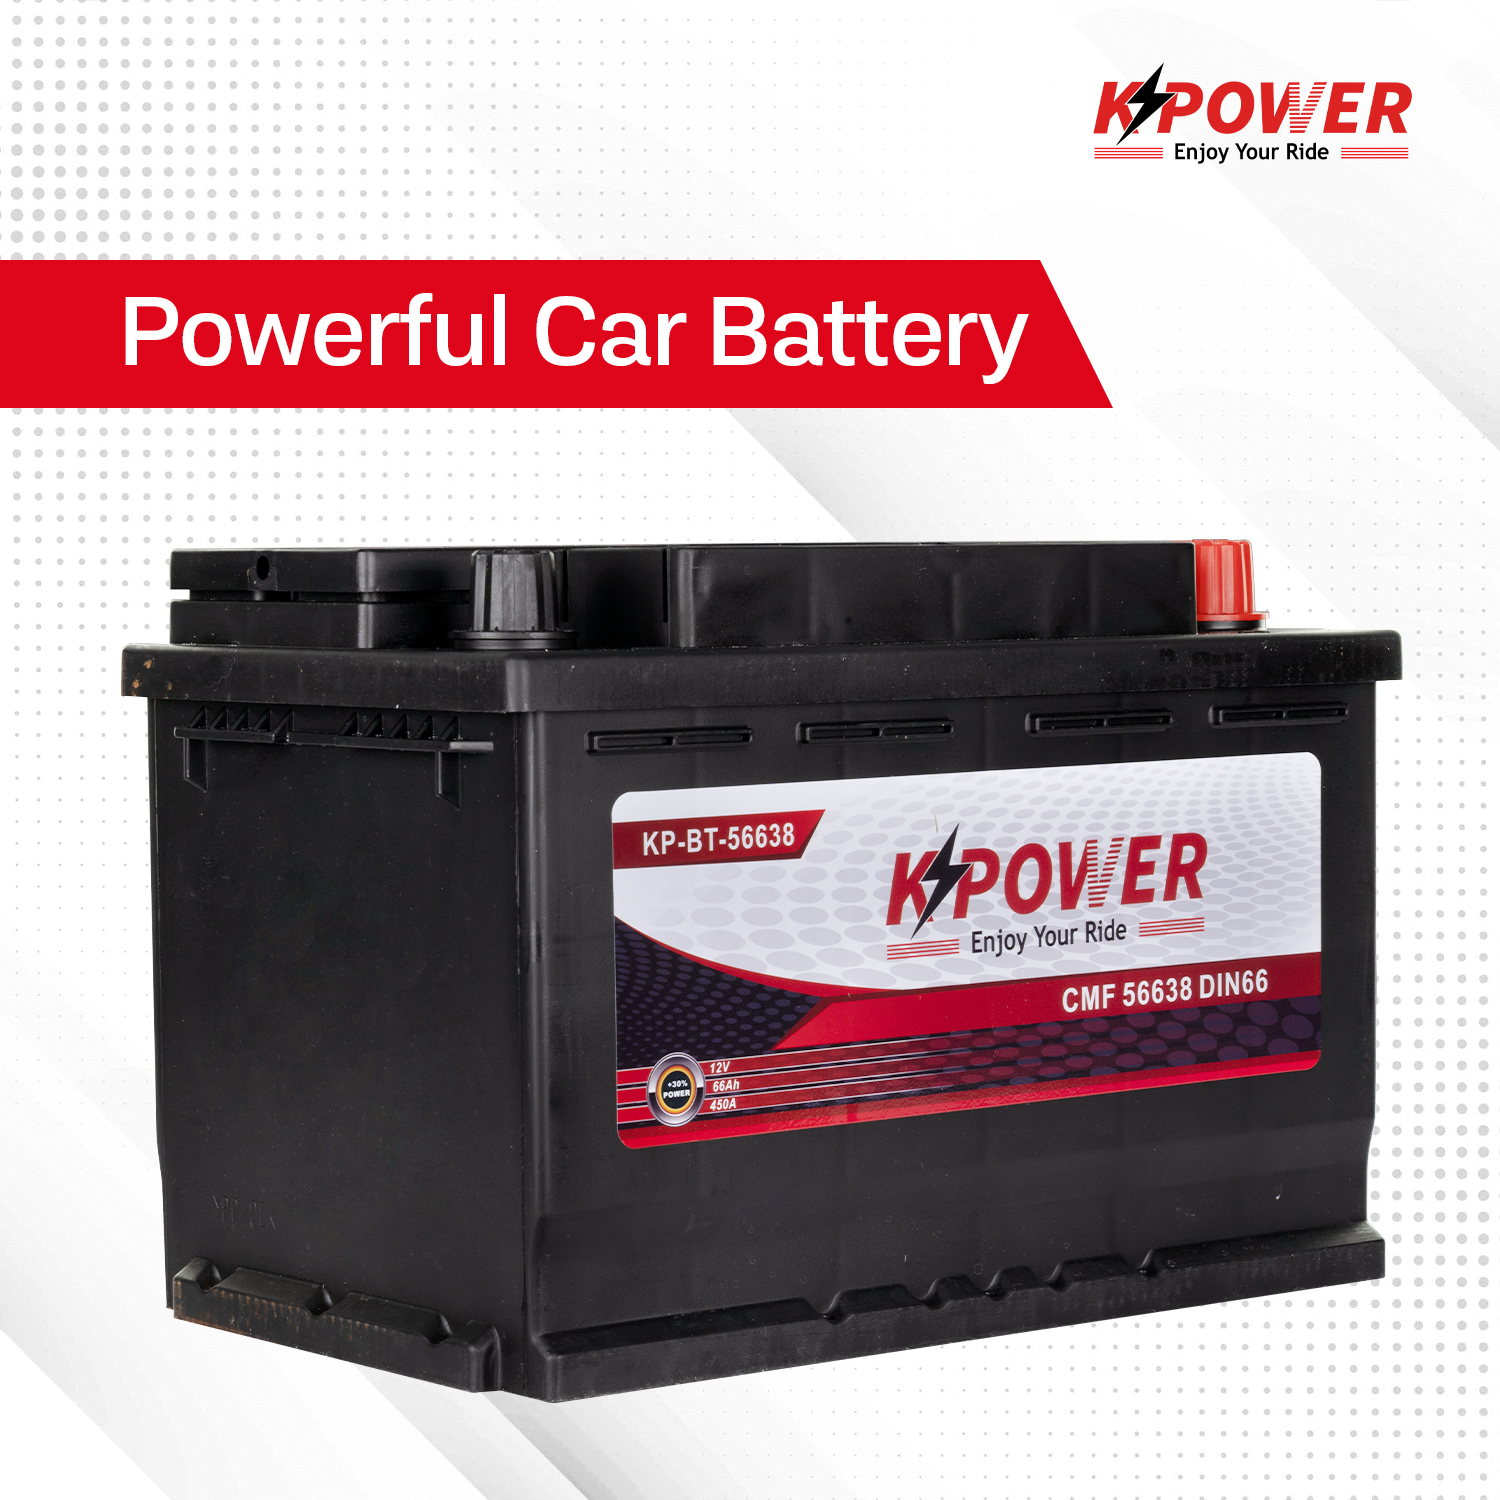 K Power DIN66 - 56638 Car Battery - K Power